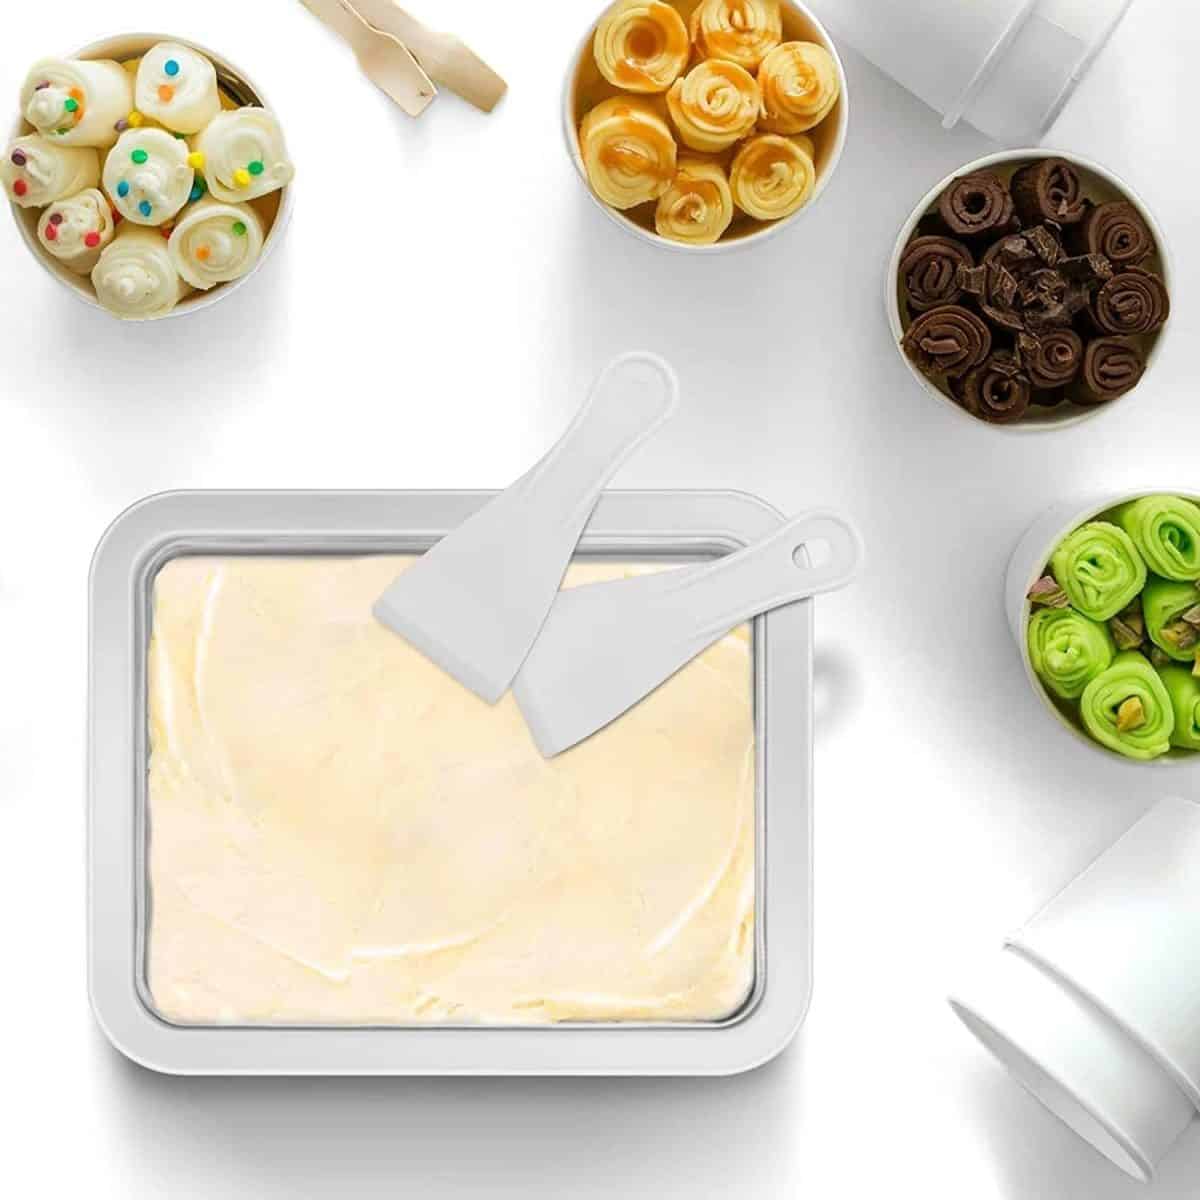 เครื่องทำไอศกรีมรีด - เครื่องทำไอศกรีมทันทีสำหรับเด็ก เครื่องรีดไอศกรีมแบบครอบครัว- เครื่องทำโยเกิร์ต- เครื่องทำผลไม้แช่แข็งจุดหวาน - ของขวัญที่ยอดเยี่ยมสำหรับเด็ก